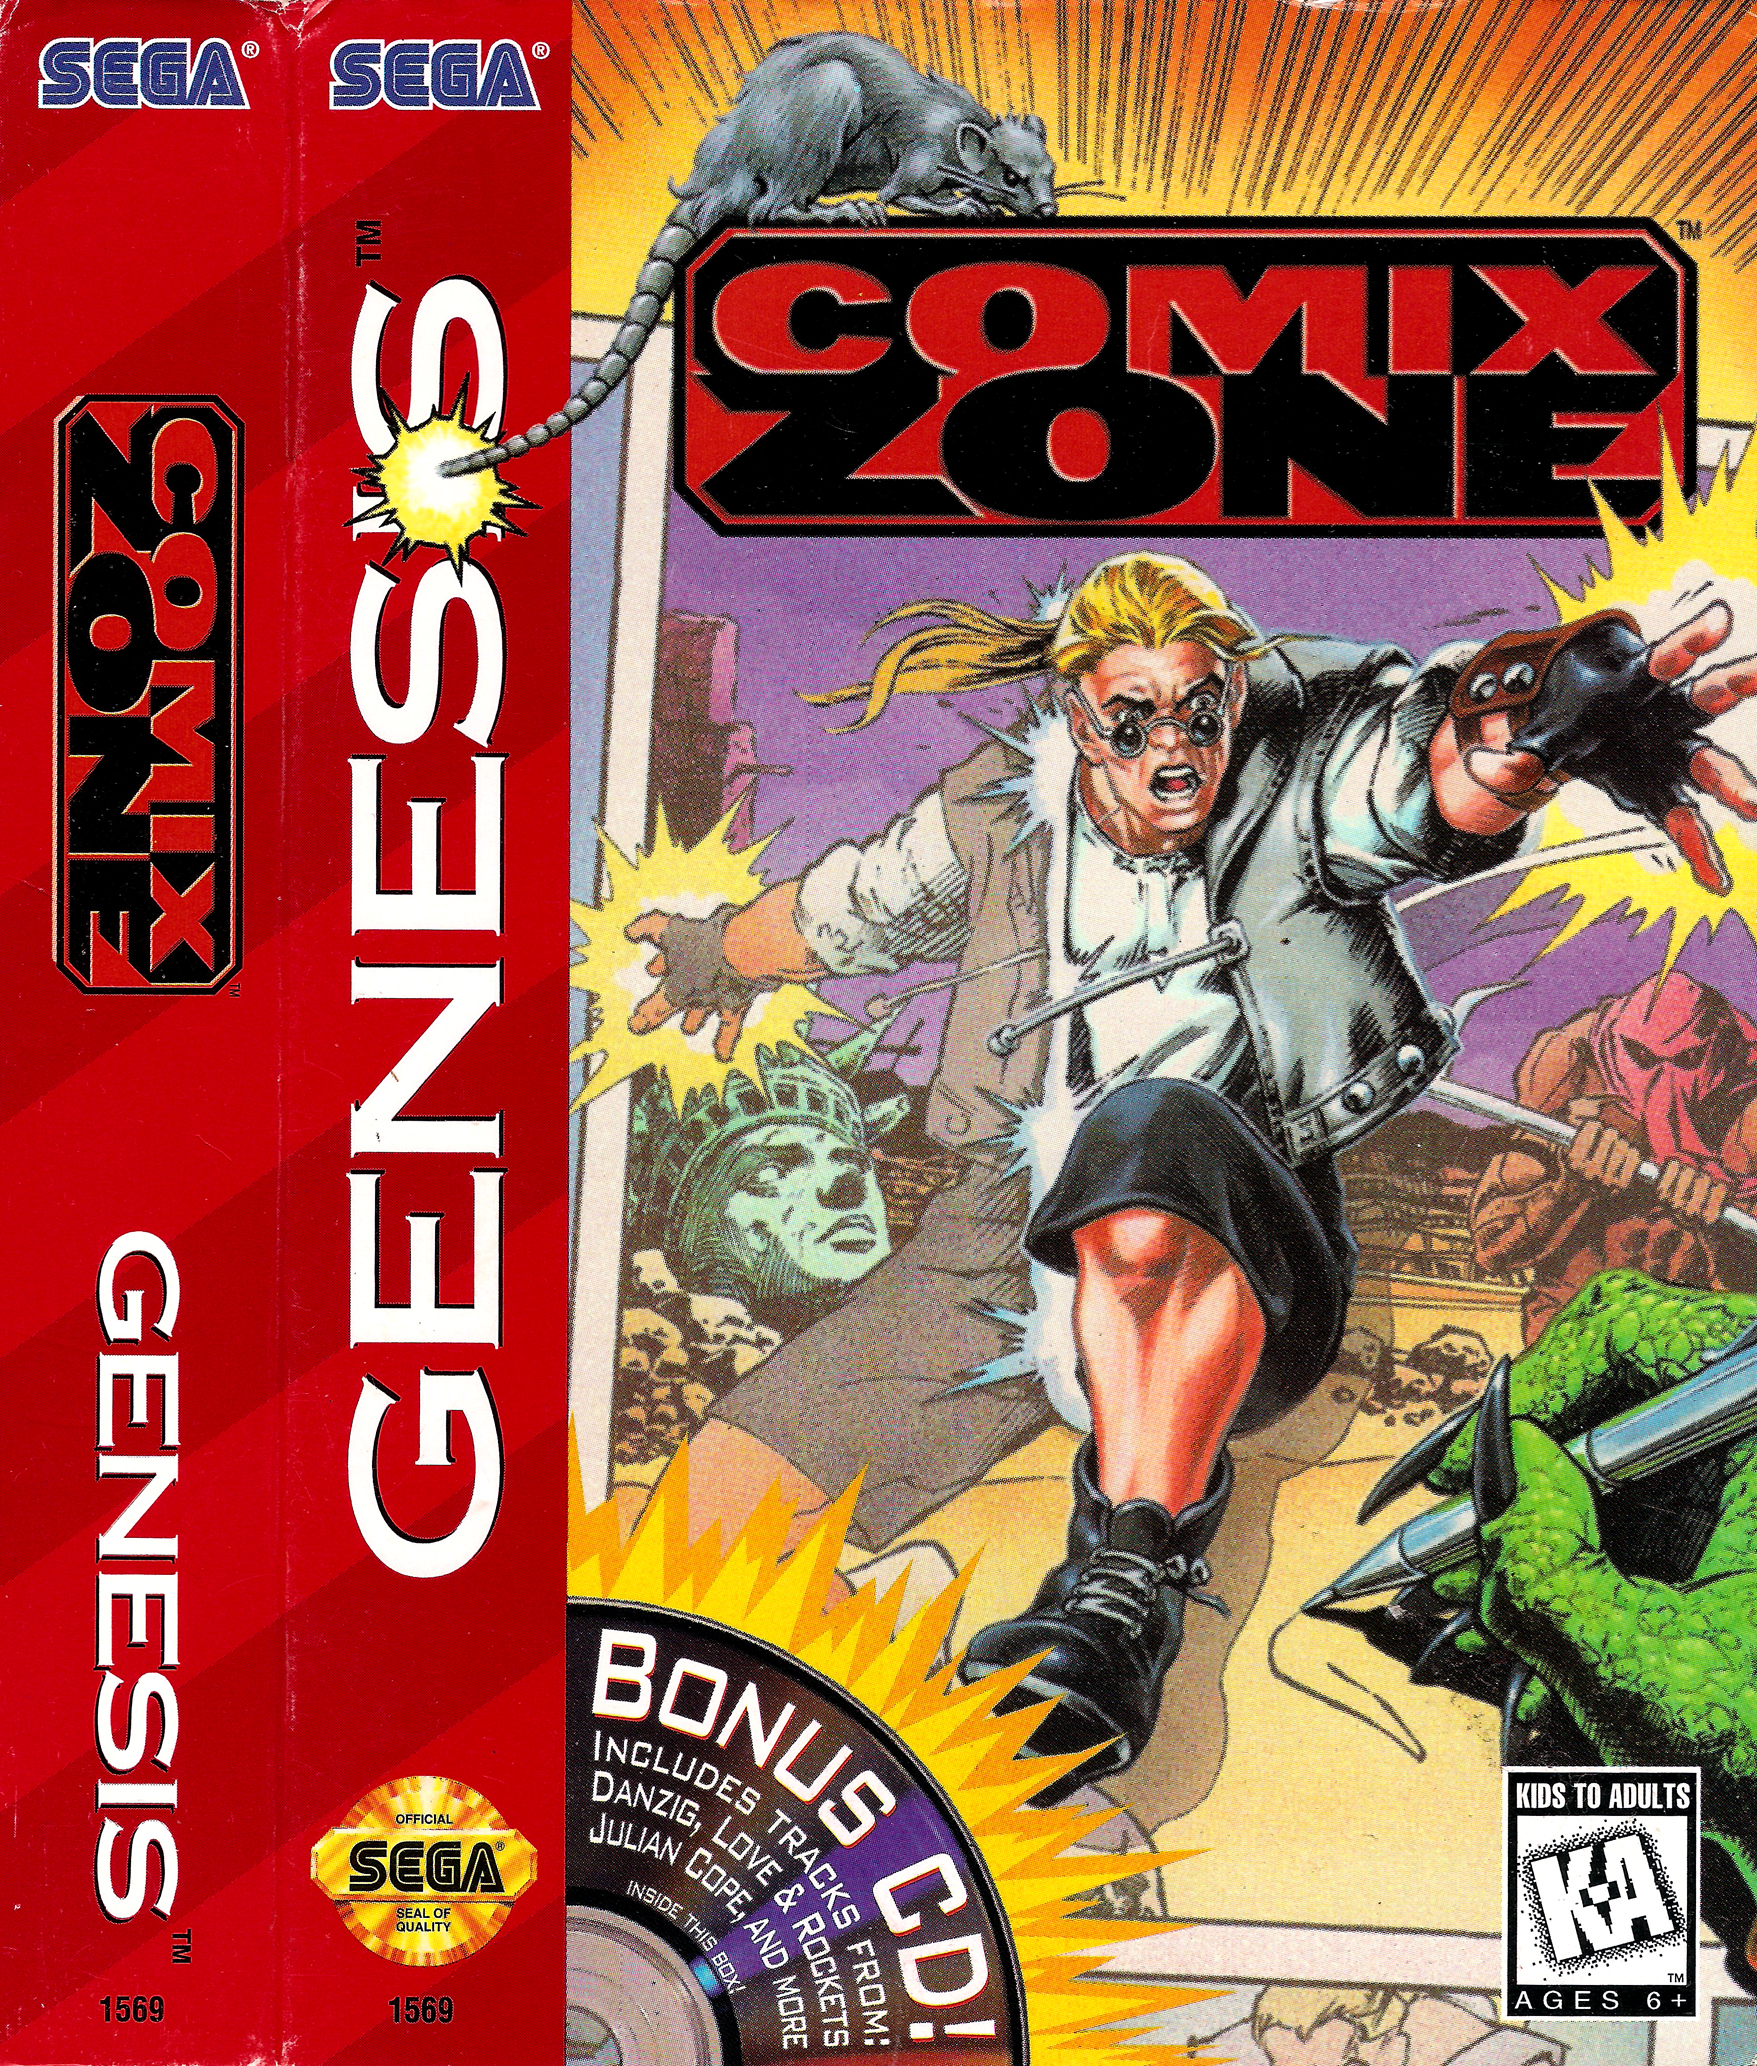 Игра на сега комикс. Comix Zone Sega картридж. Комикс зон сега обложка. Sega игра комикс. Игра на сеге комикс зона.